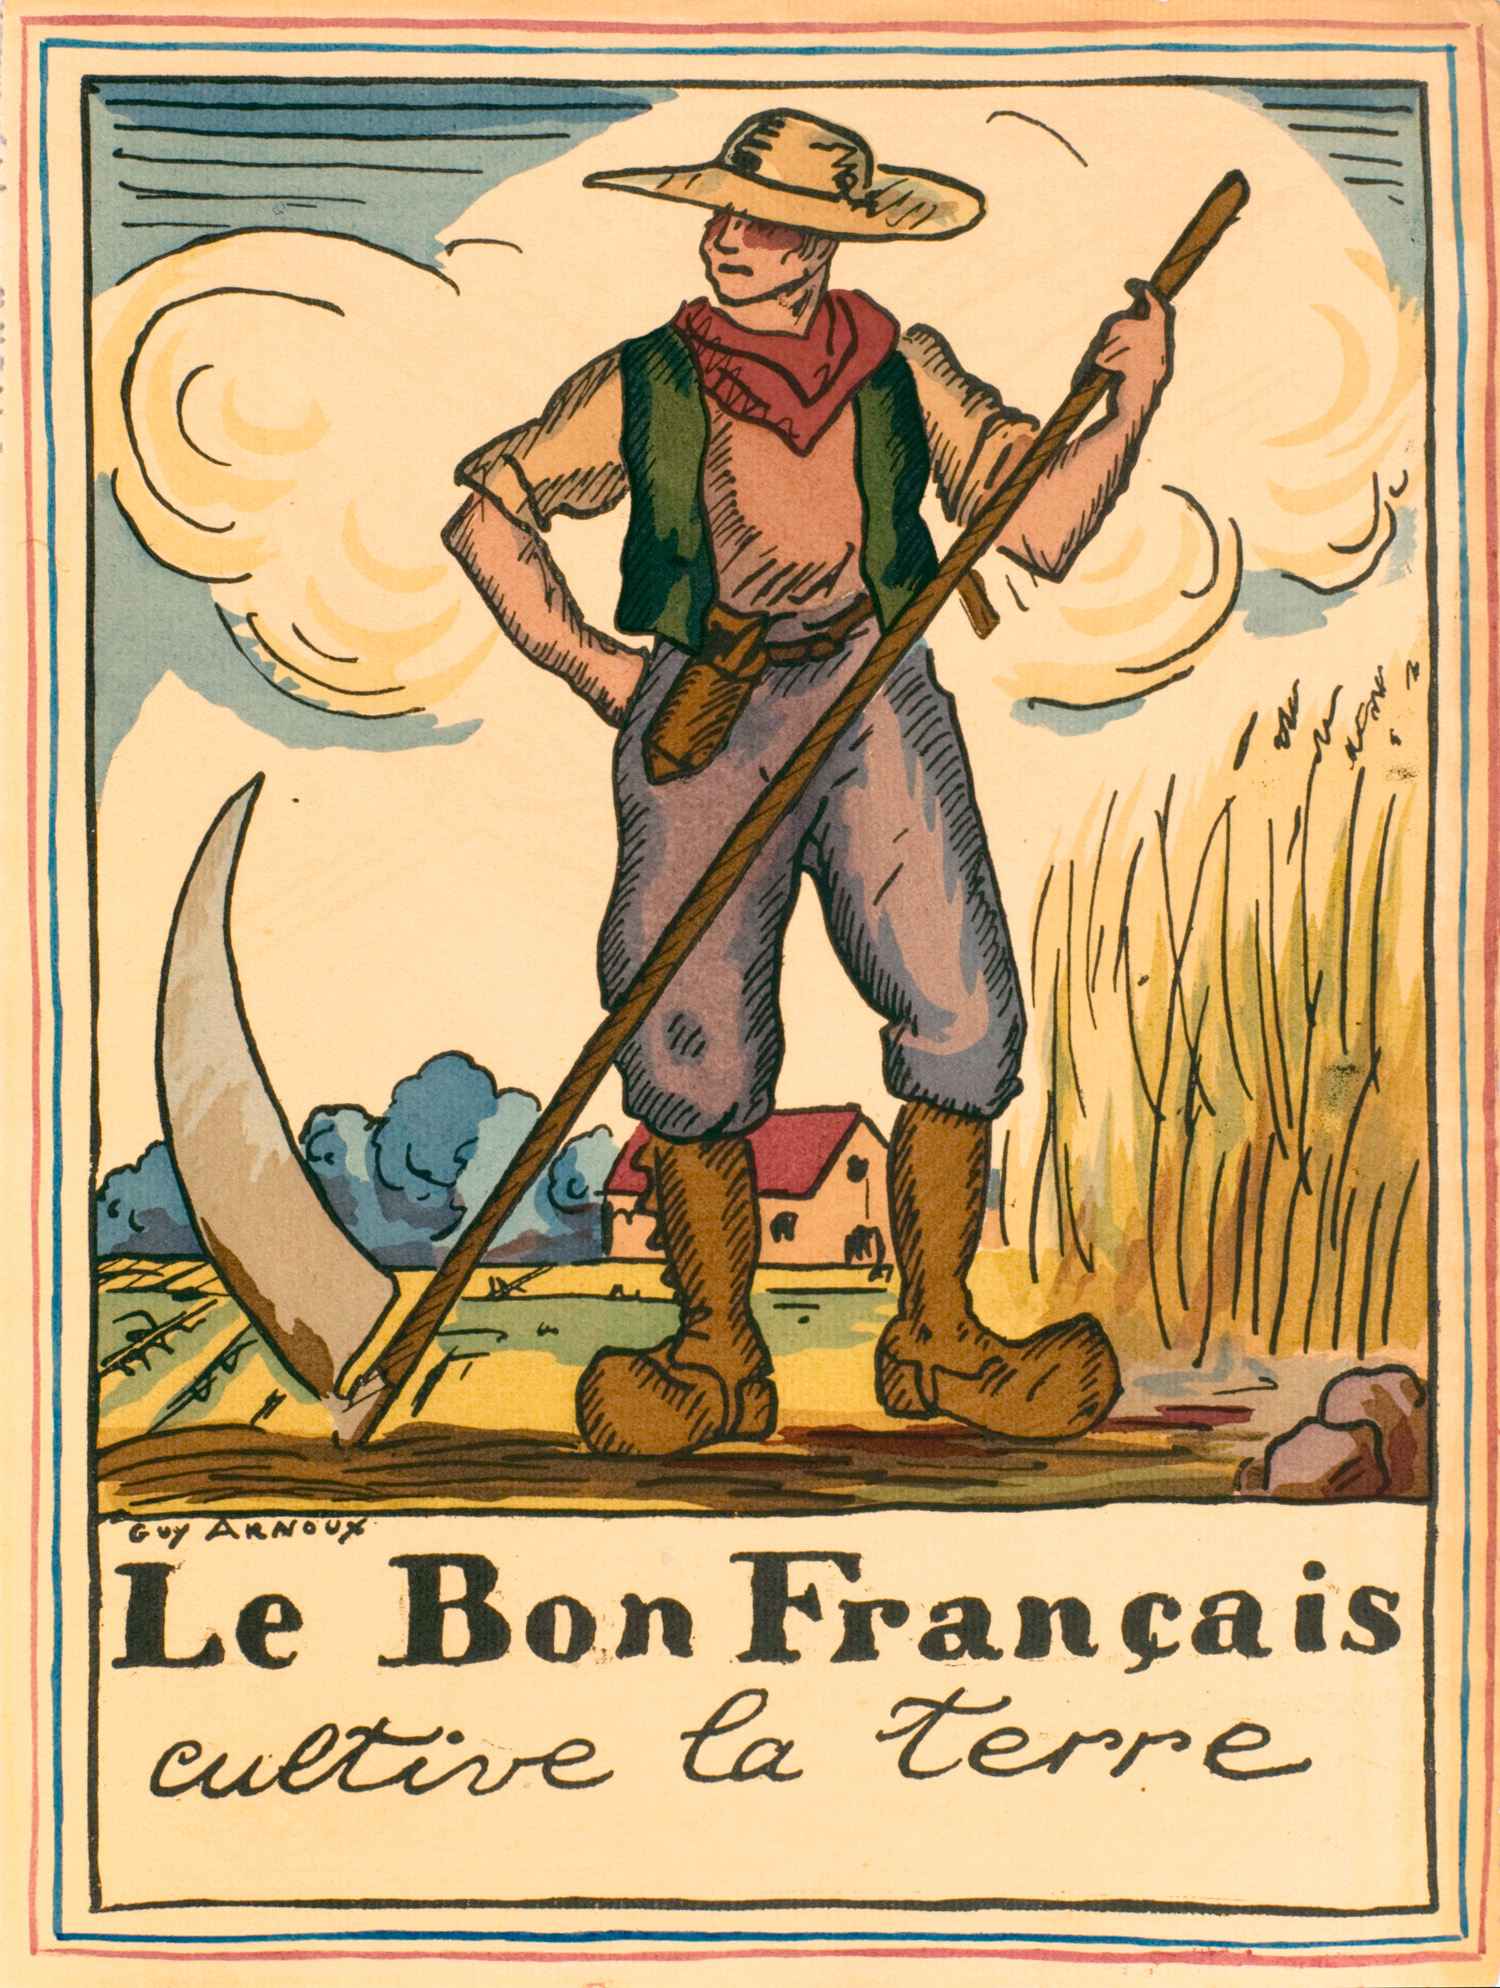 Le Bon Français cultive la terre | Guy Arnoux | Le Bon Français